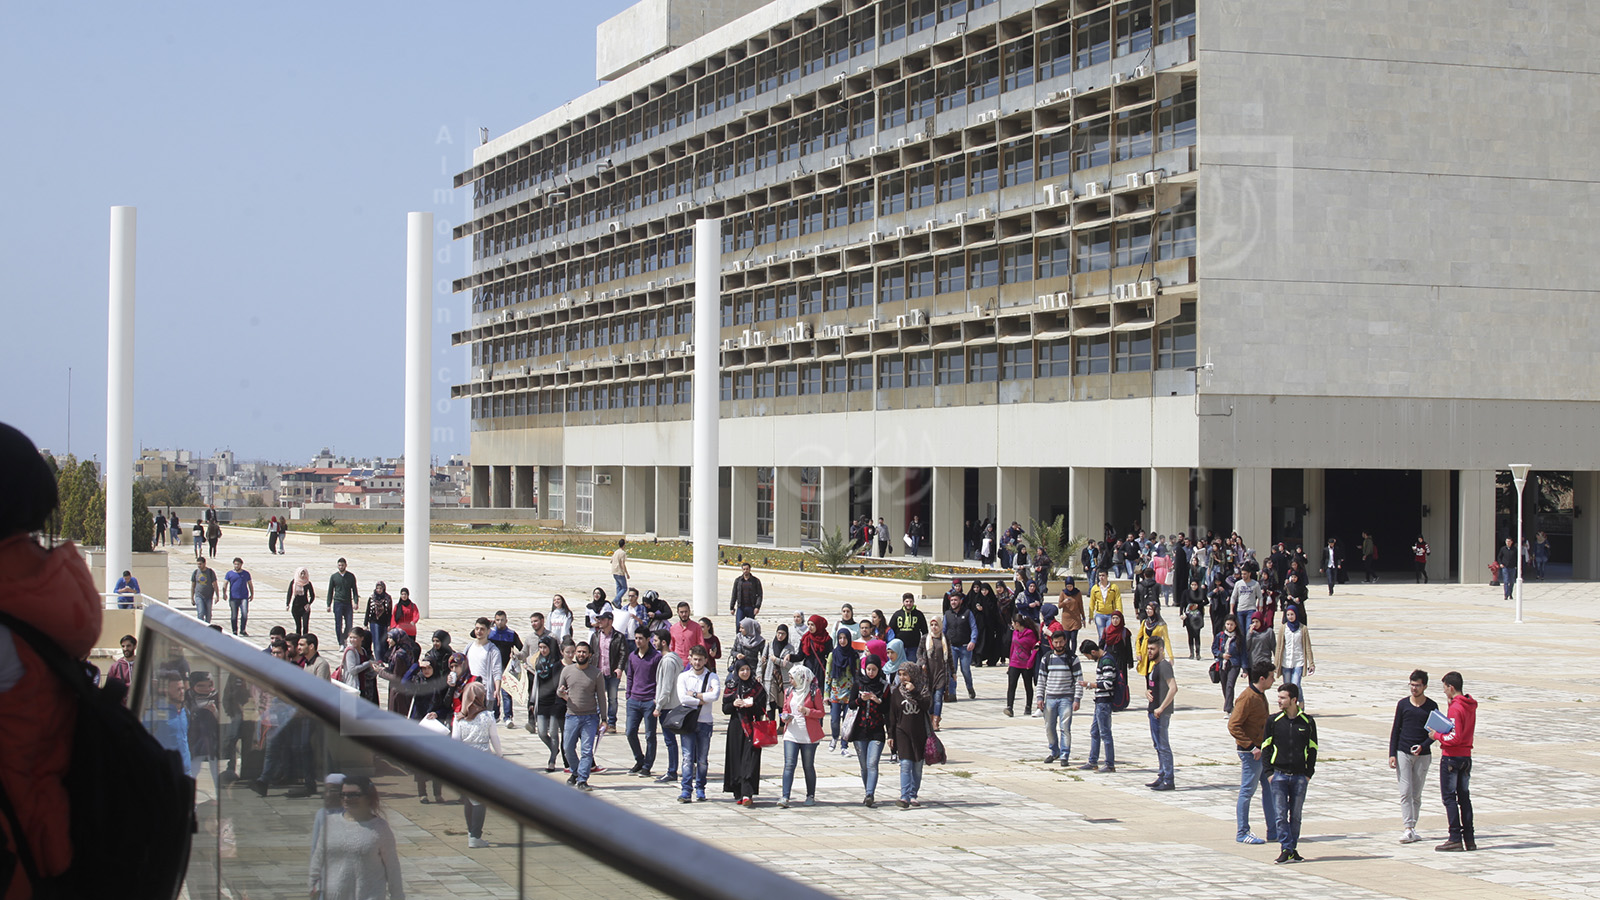 الجامعة اللبنانية والمهزلة الكبيرة: "تفريغ" نواب ووزراء وزوجات مسؤولين